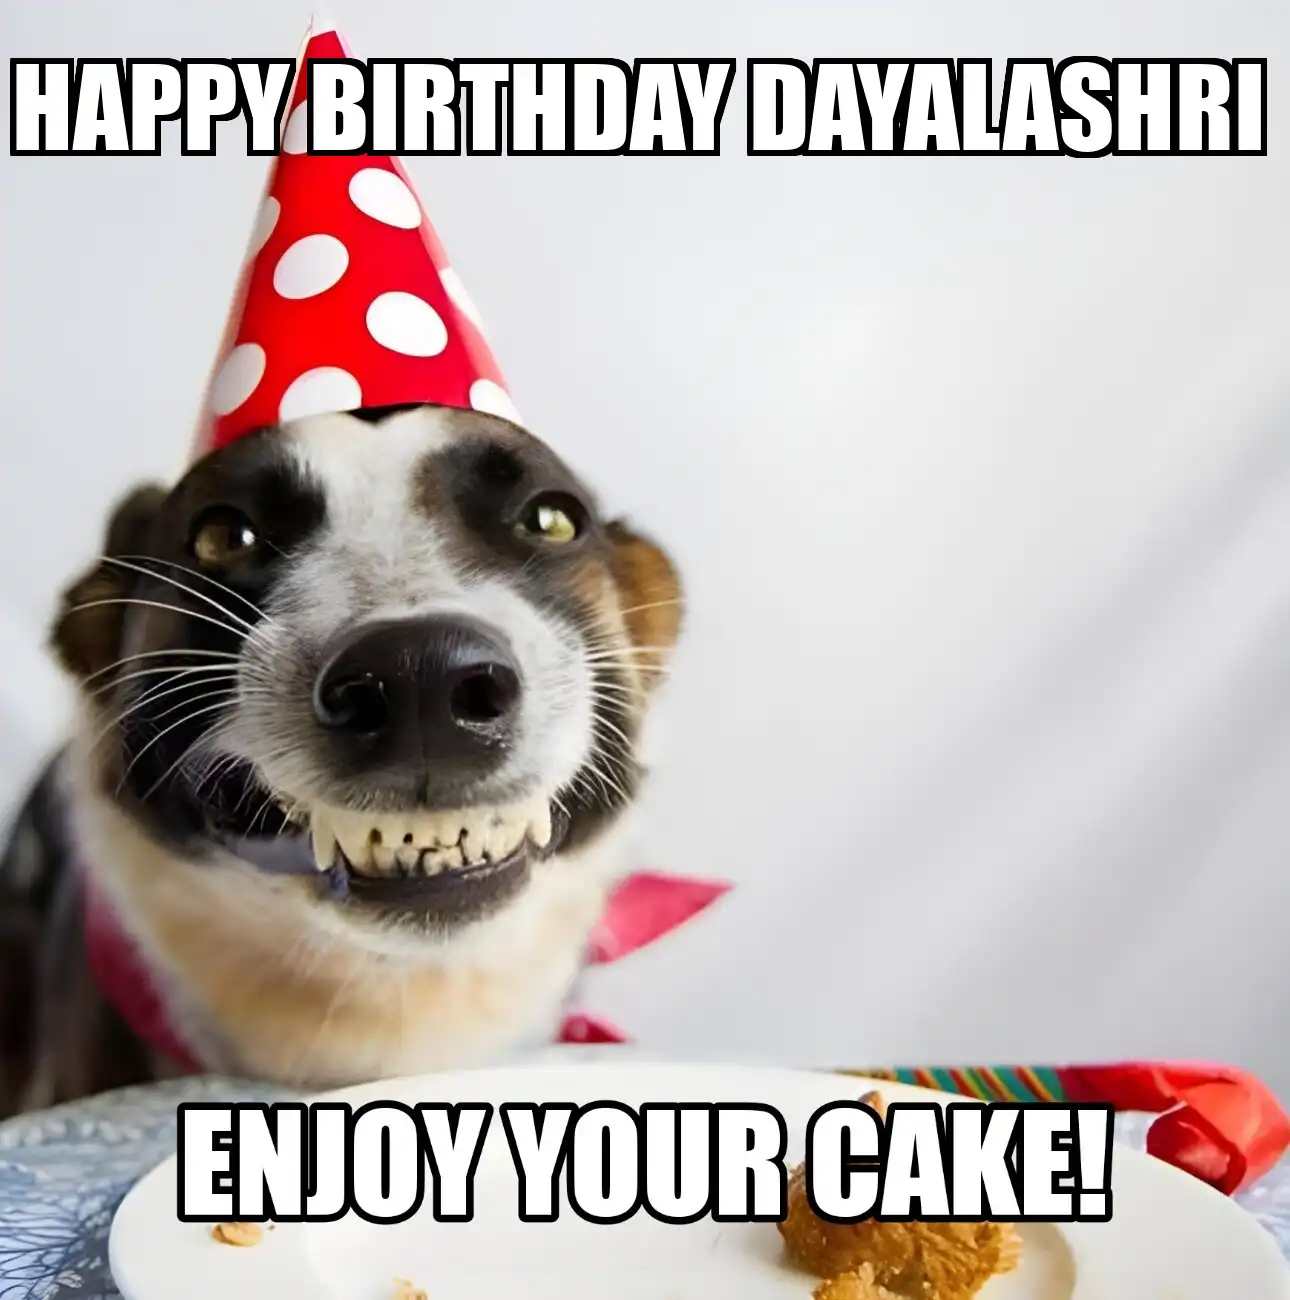 Happy Birthday Dayalashri Enjoy Your Cake Dog Meme